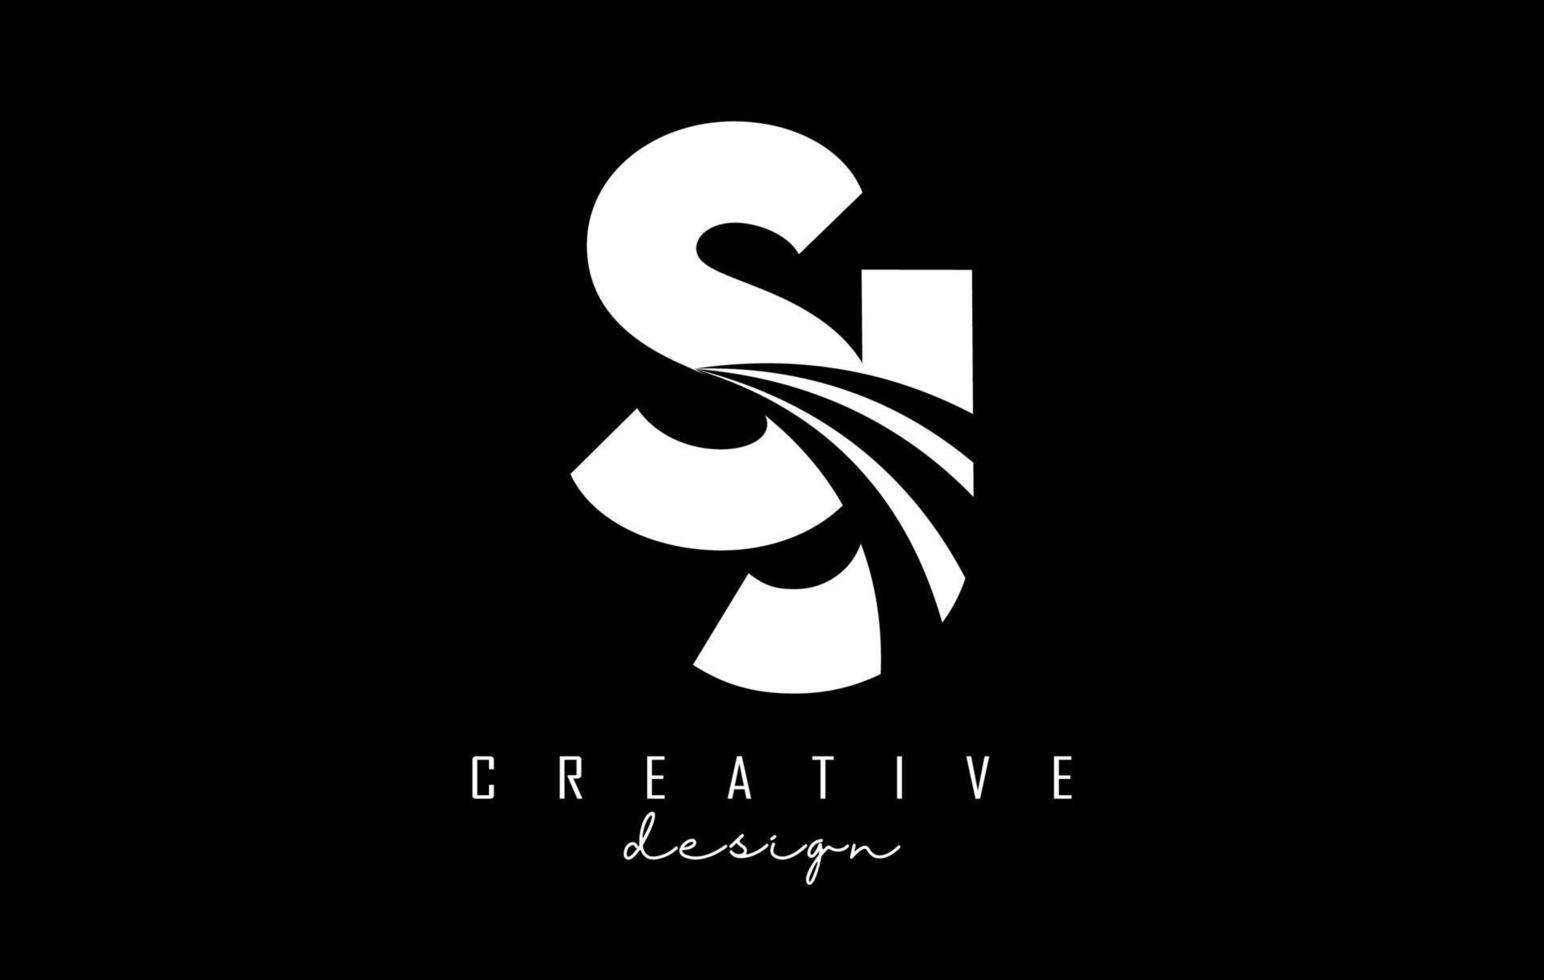 letras brancas criativas sj sj logotipo com linhas principais e design de conceito de estrada. letras com desenho geométrico. vetor